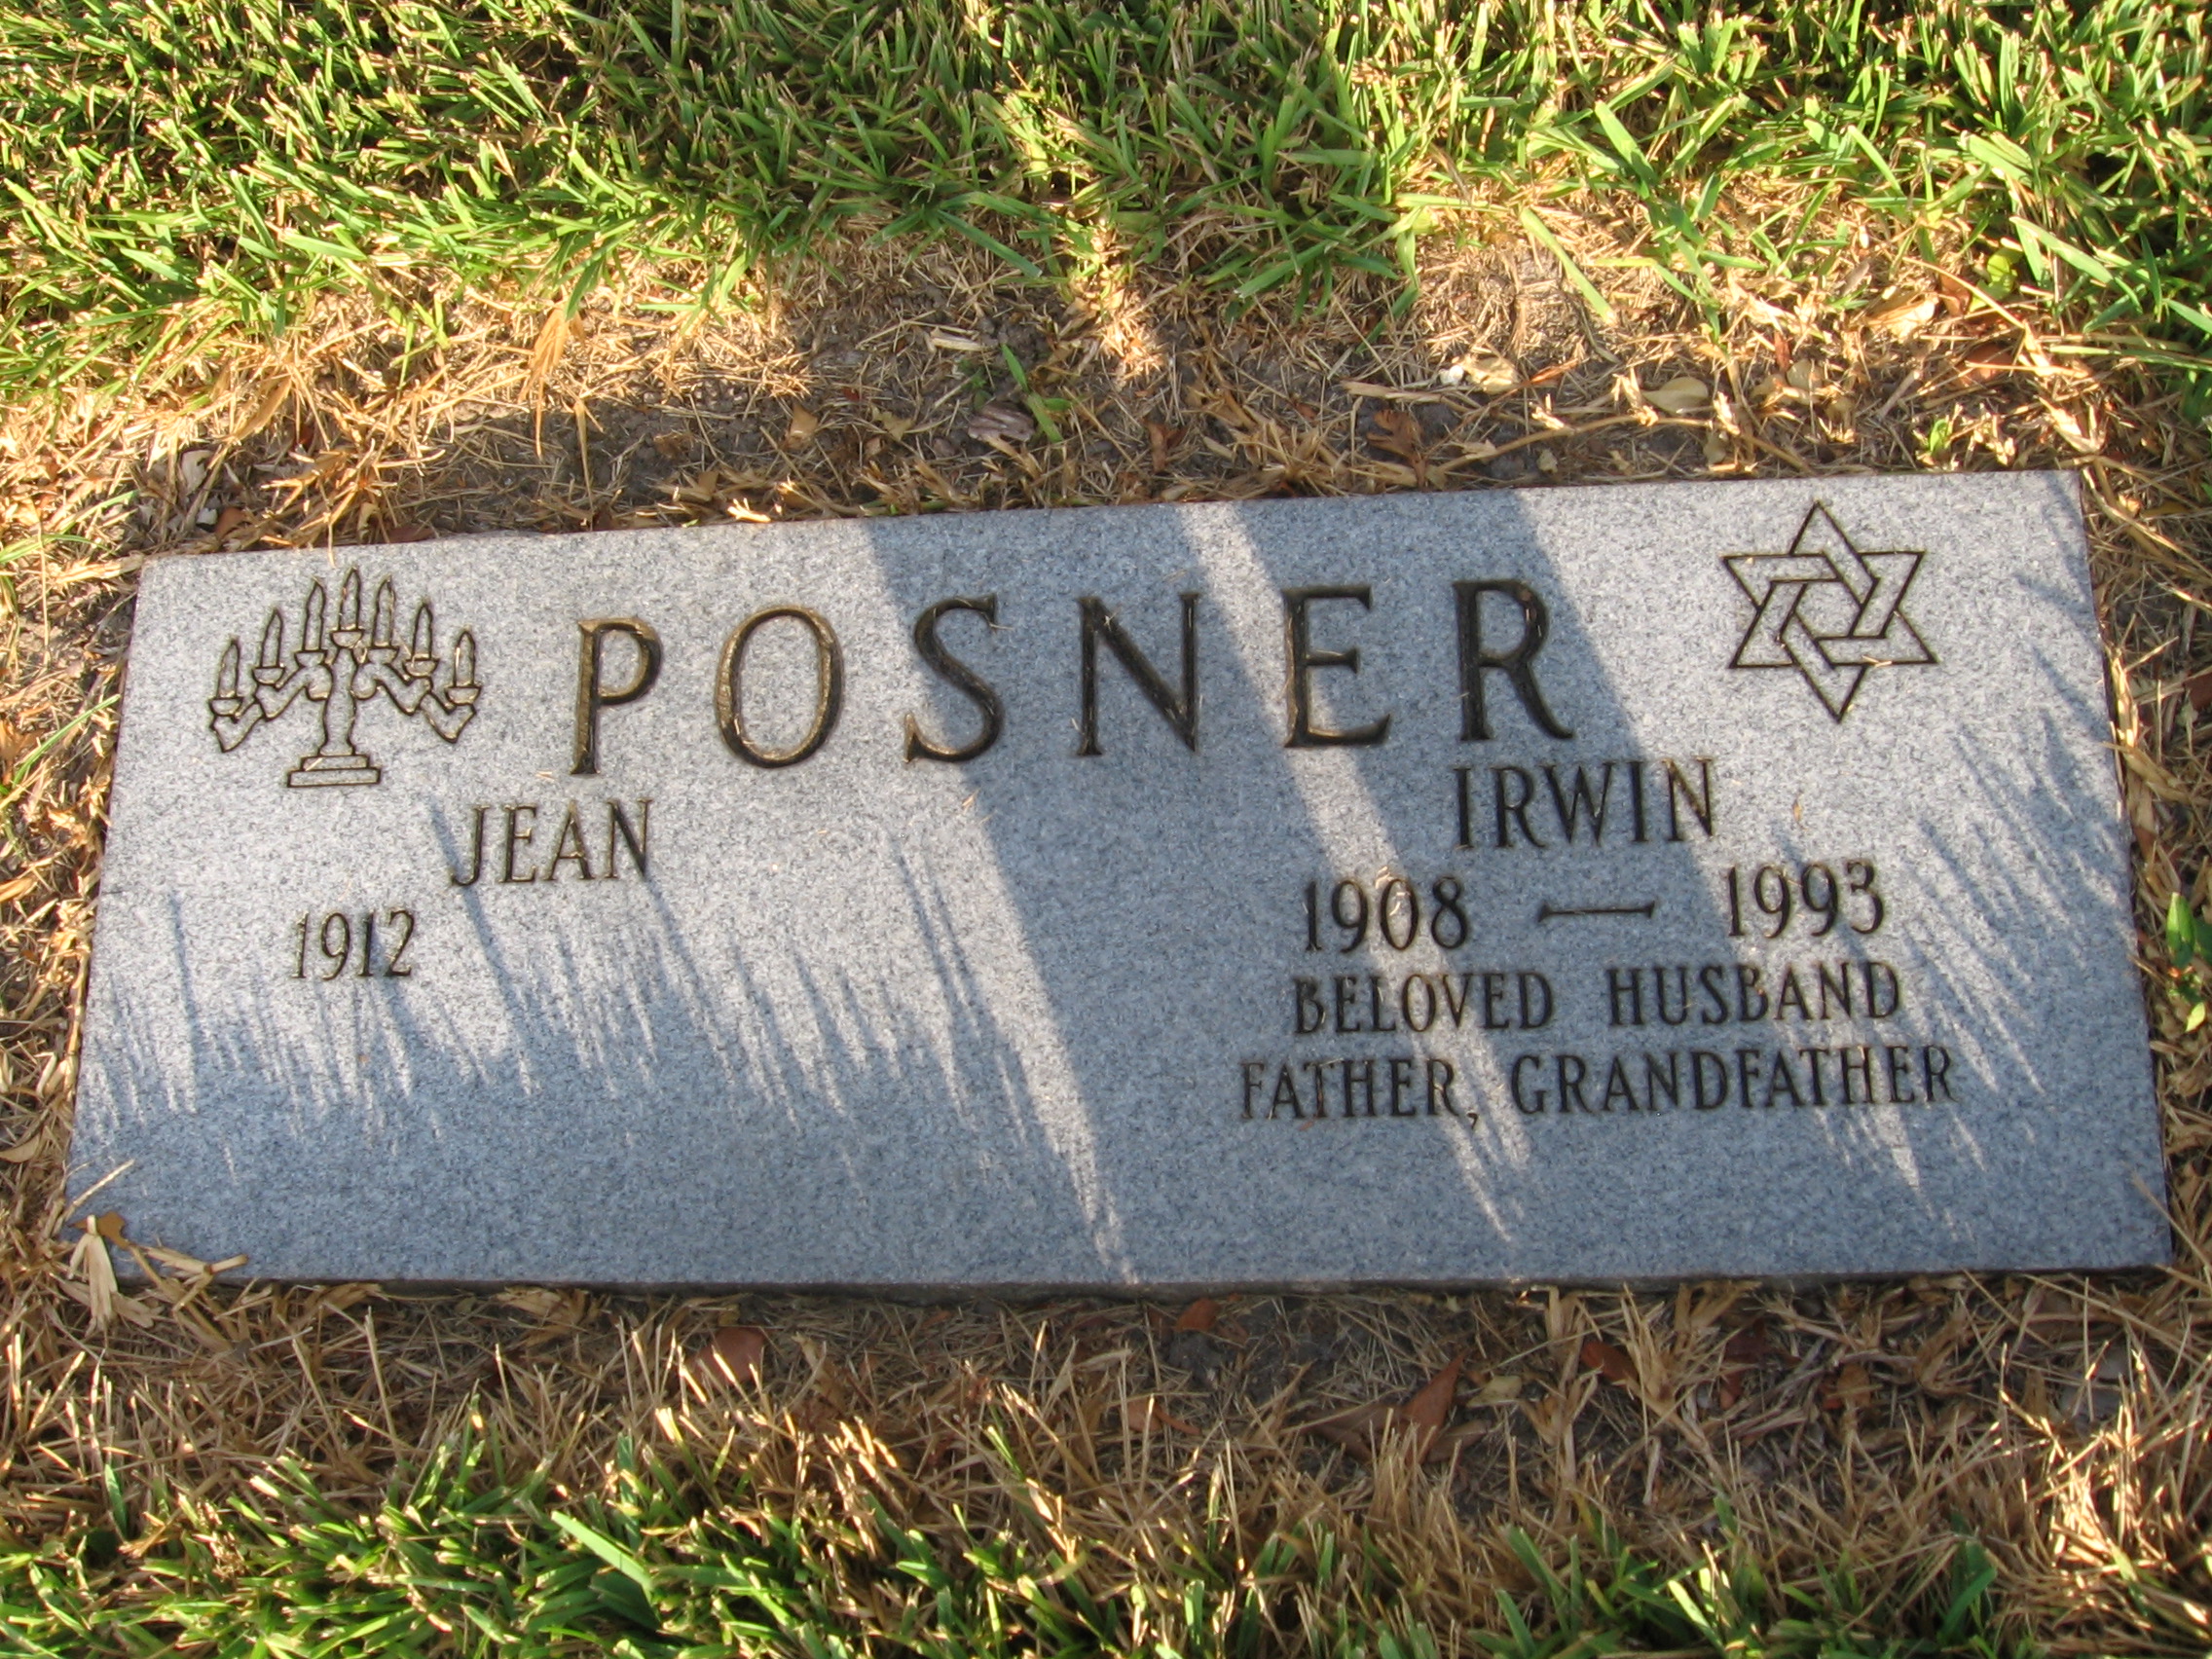 Irwin Posner